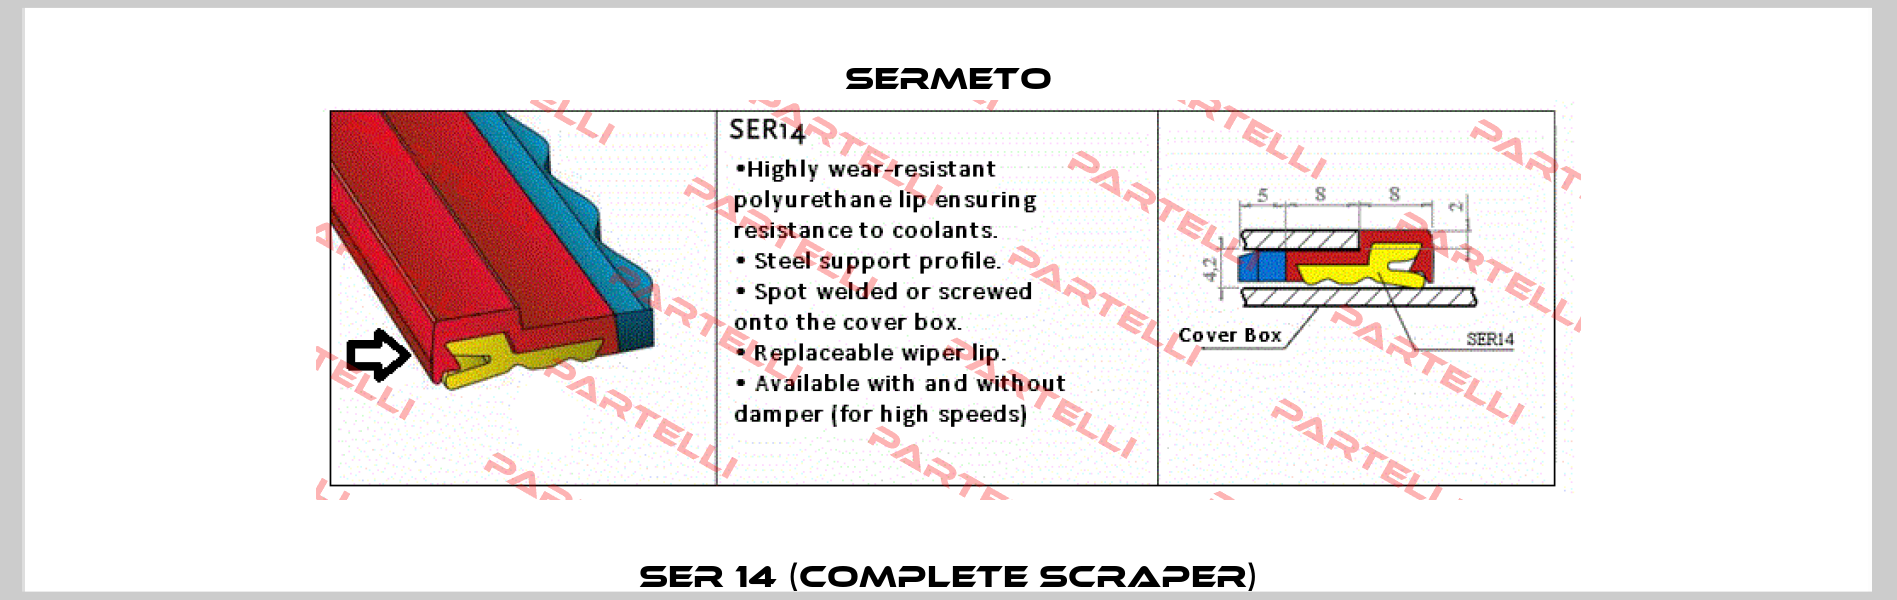 SER 14 (Complete scraper) Sermeto